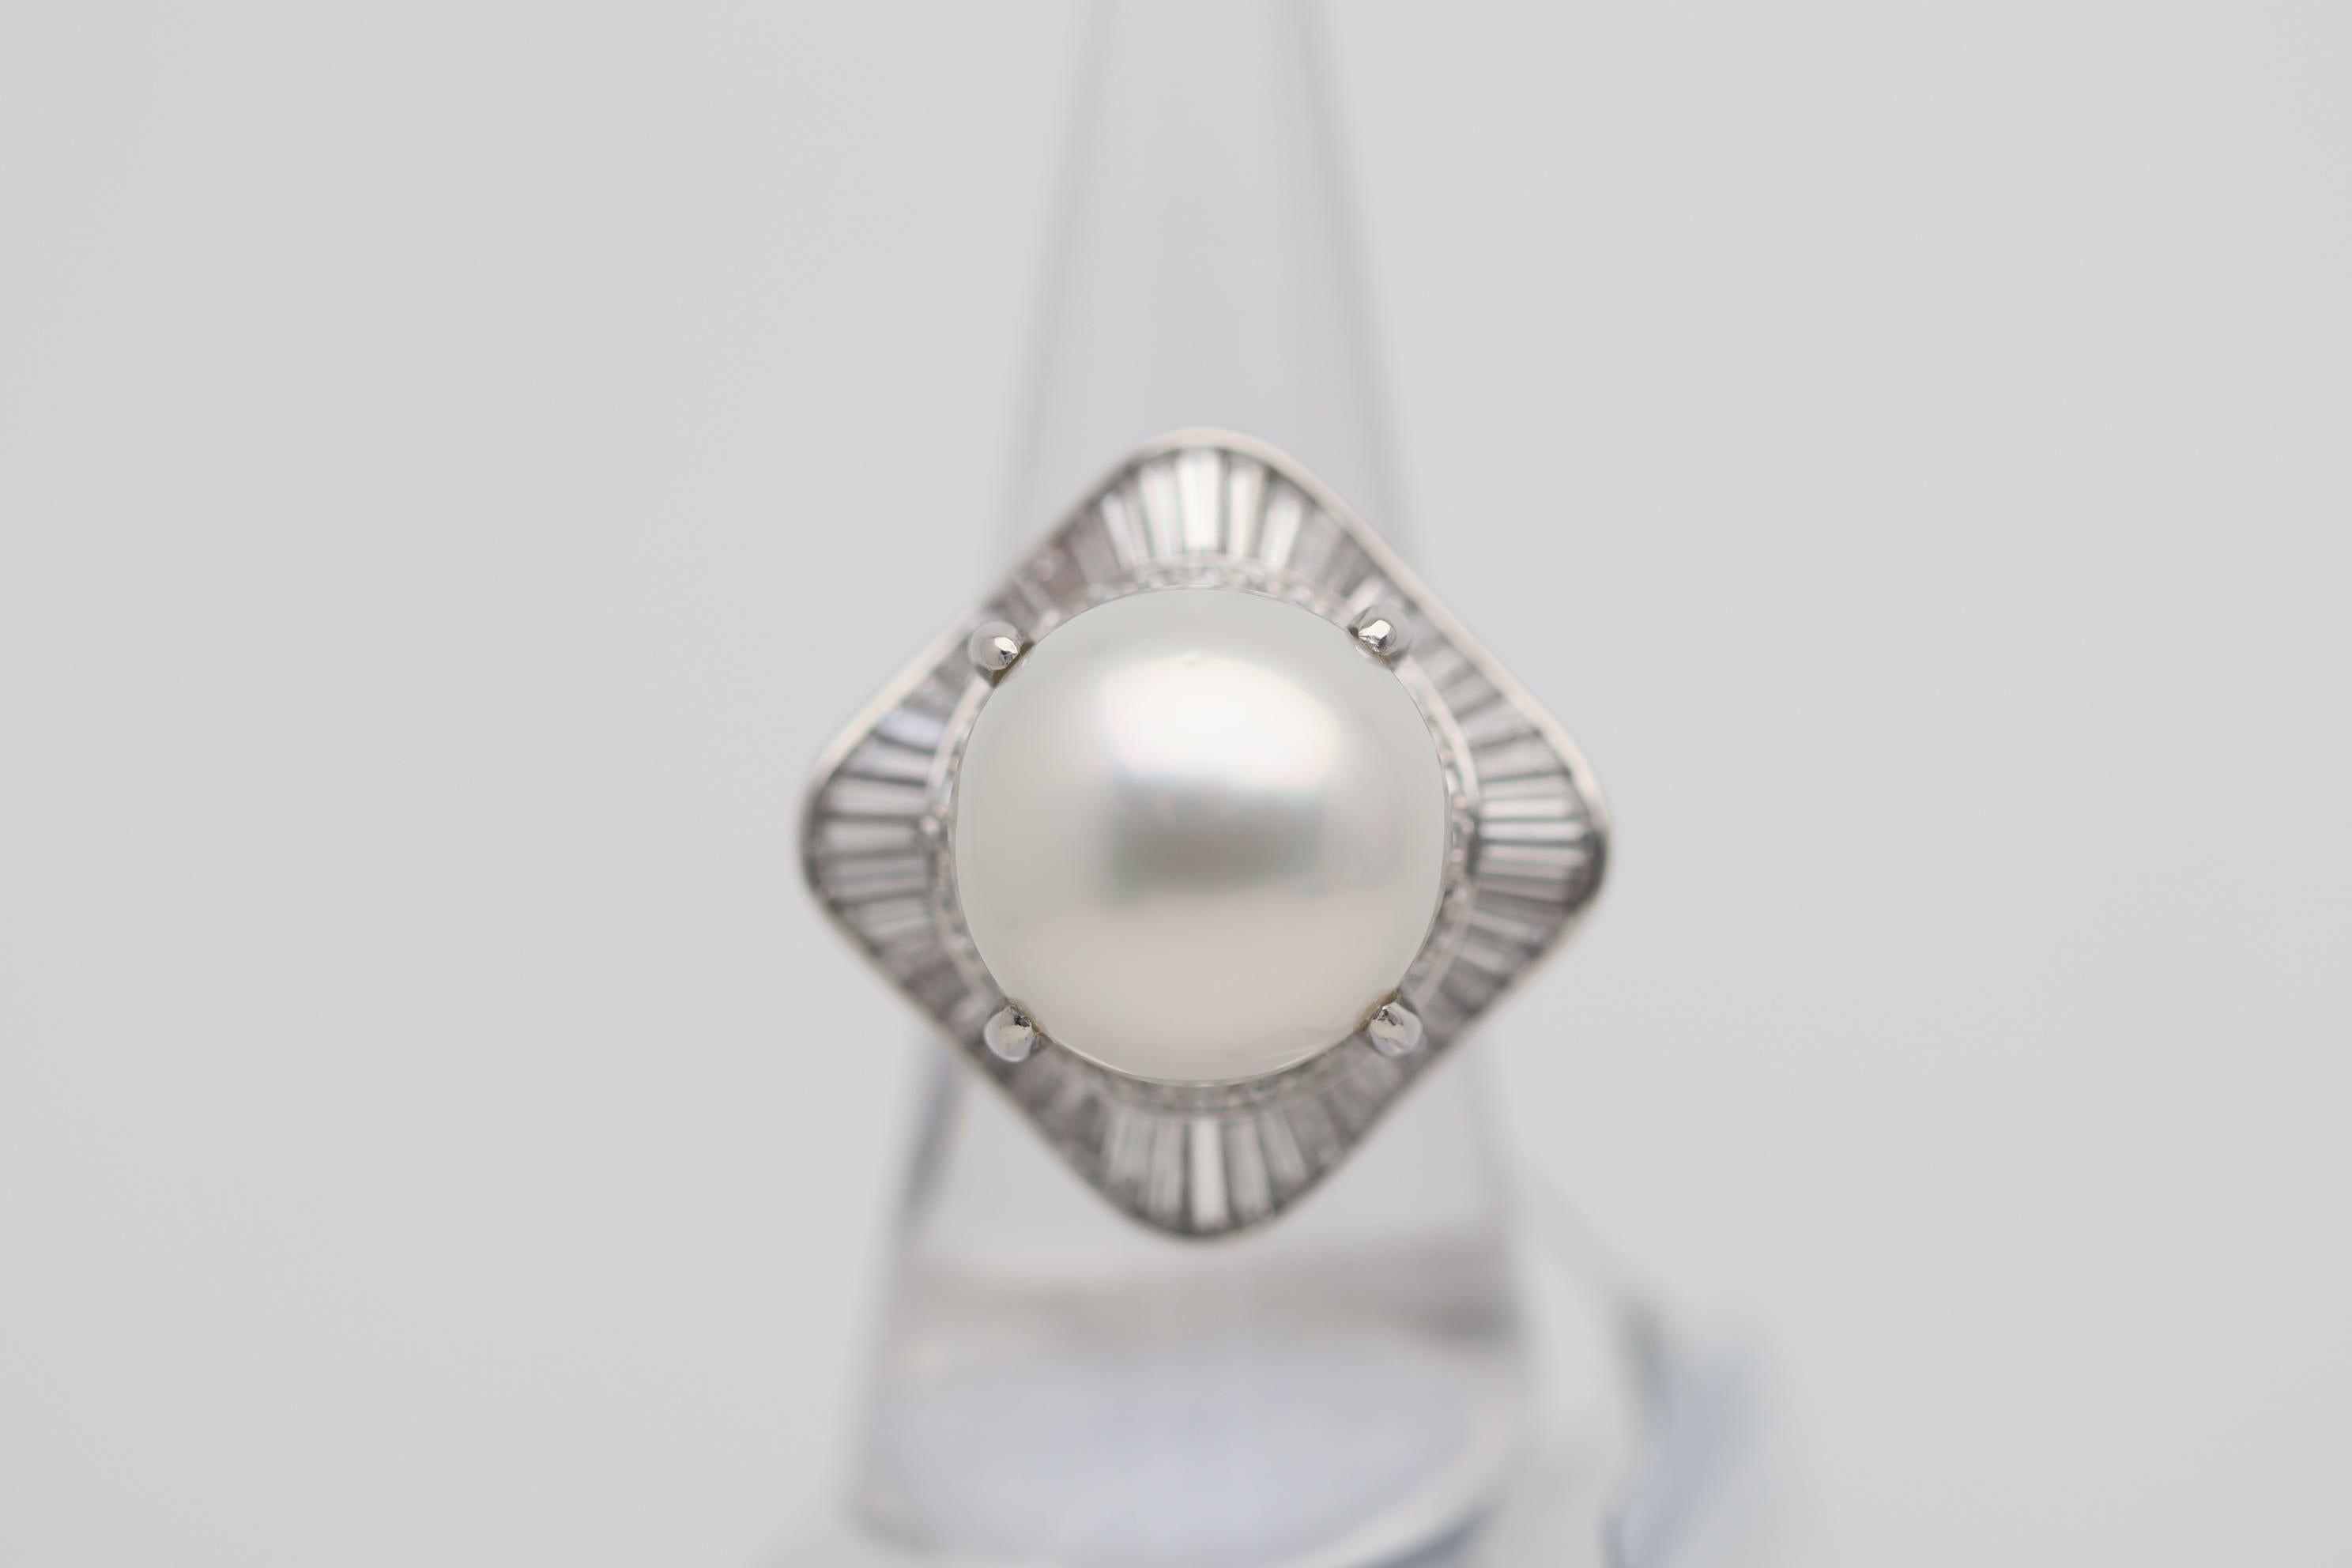 Ein großes und schönes Stück mit einer feinen 16mm Südseeperle! Das Besondere an der Perle ist die Kombination aus ihrer Größe und ihrer feinen Qualität. Die Perle ist perfekt gerundet und hat einen ausgezeichneten Glanz und Perlmuttqualität.